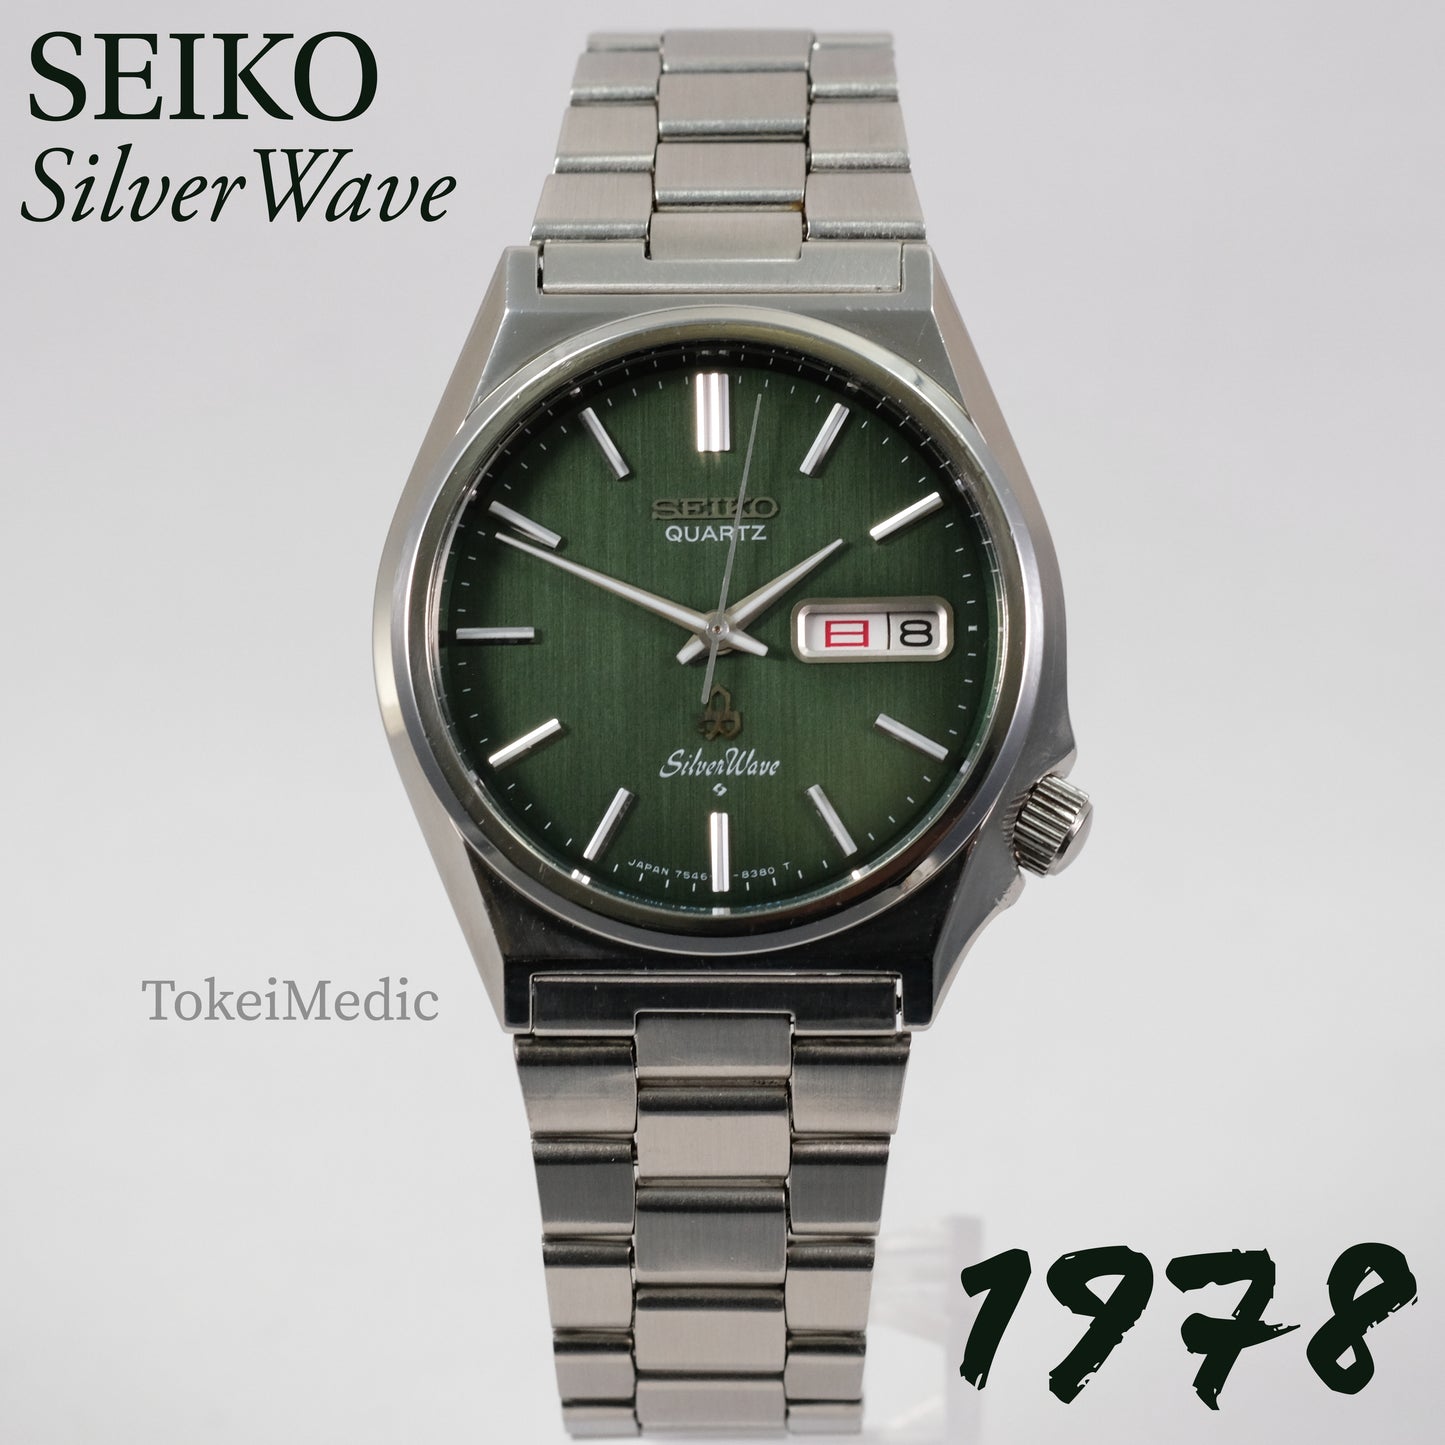 1978 Seiko SilverWave 7546-8340